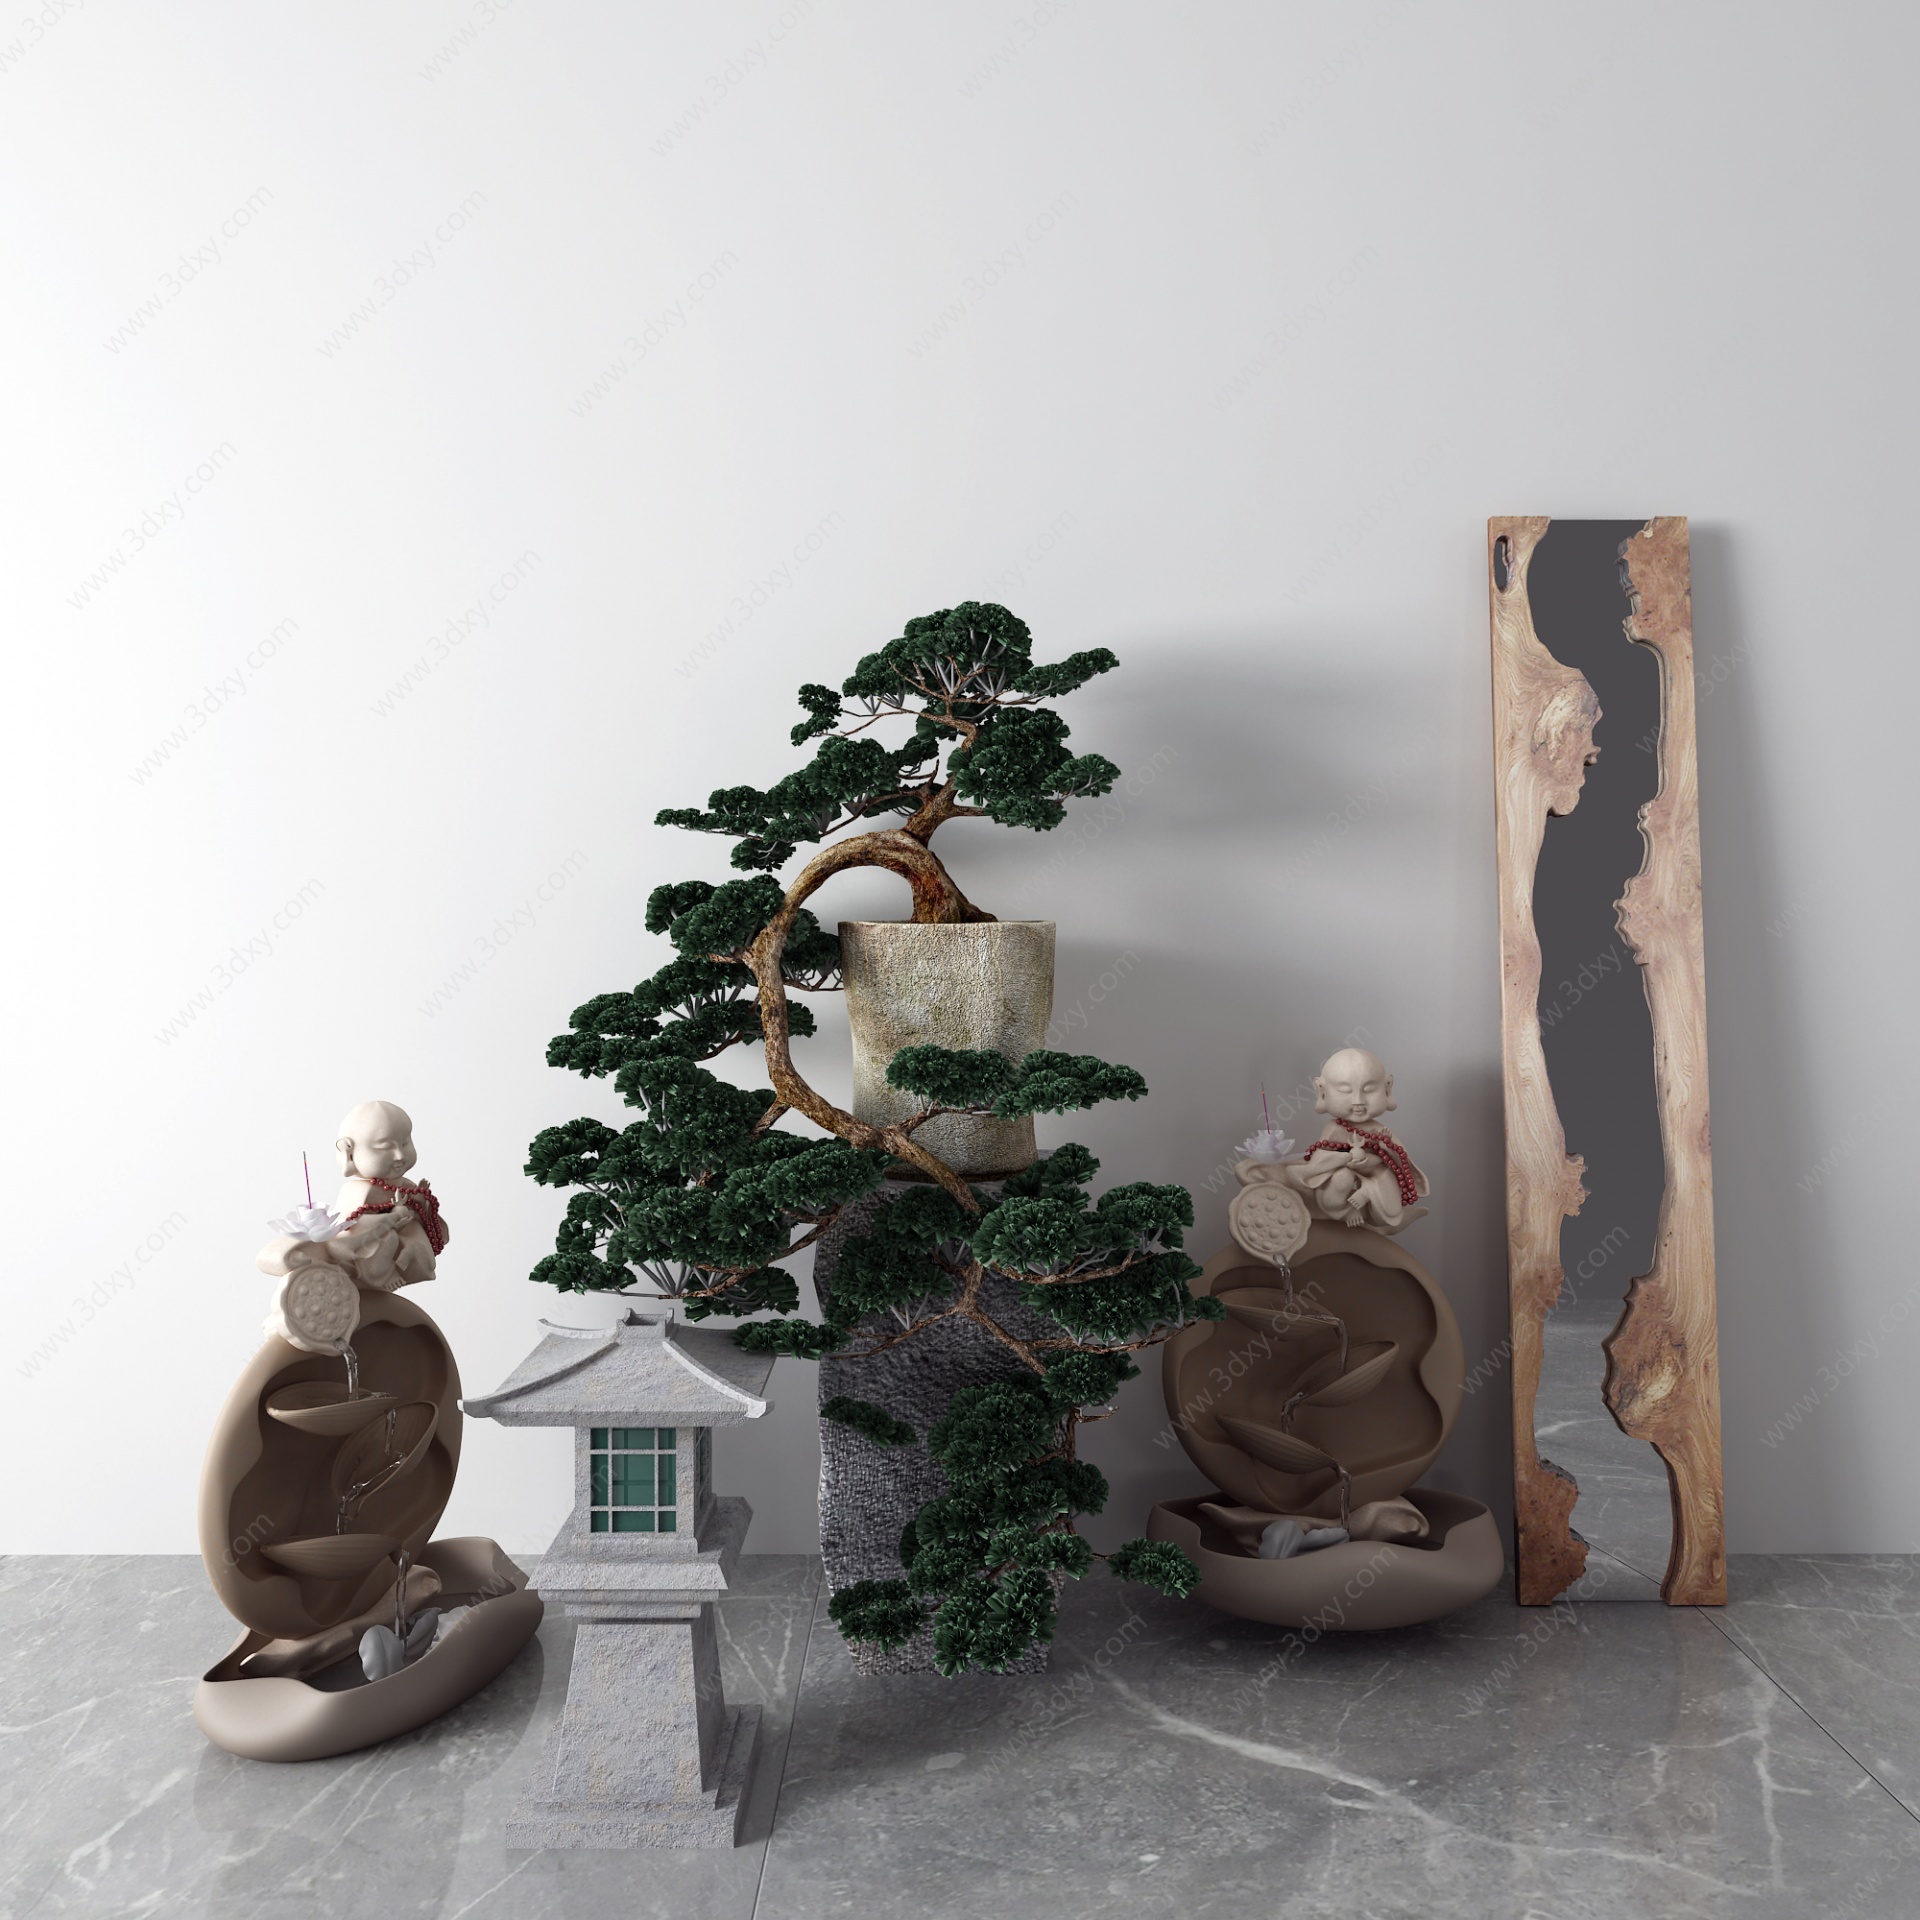 中式景观小平石灯盆栽3D模型